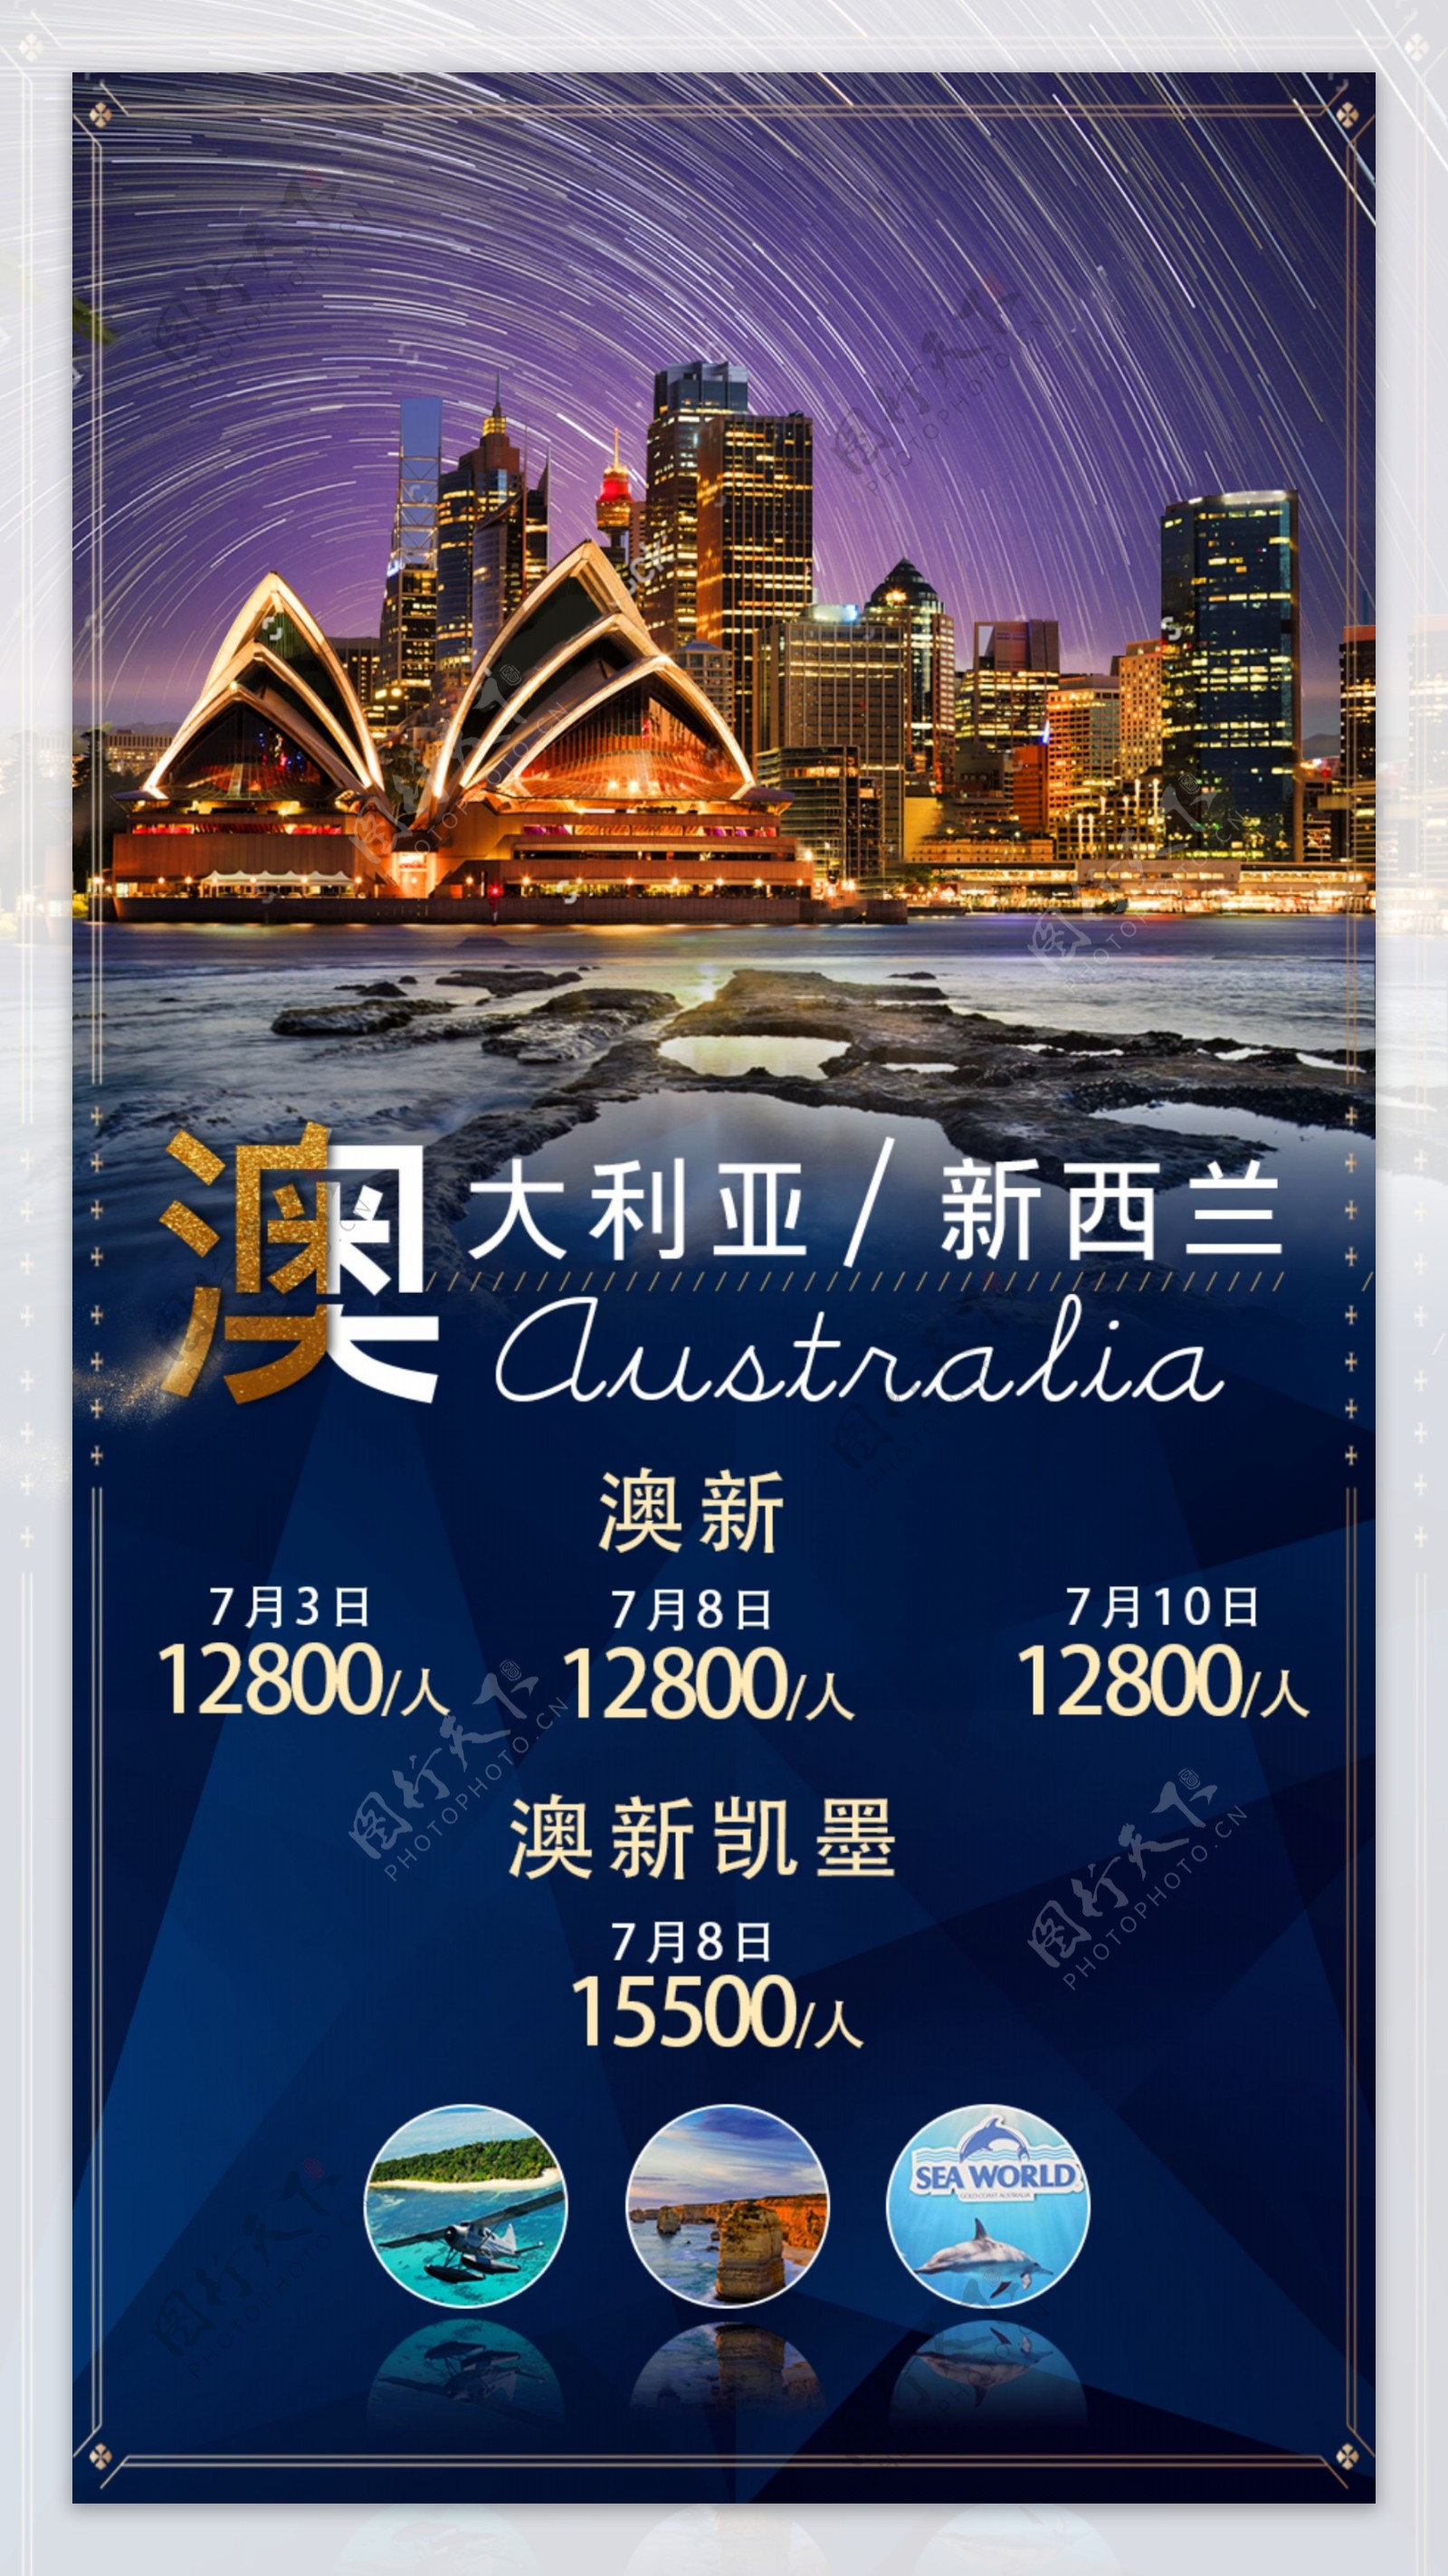 澳大利亚新西兰旅游海报